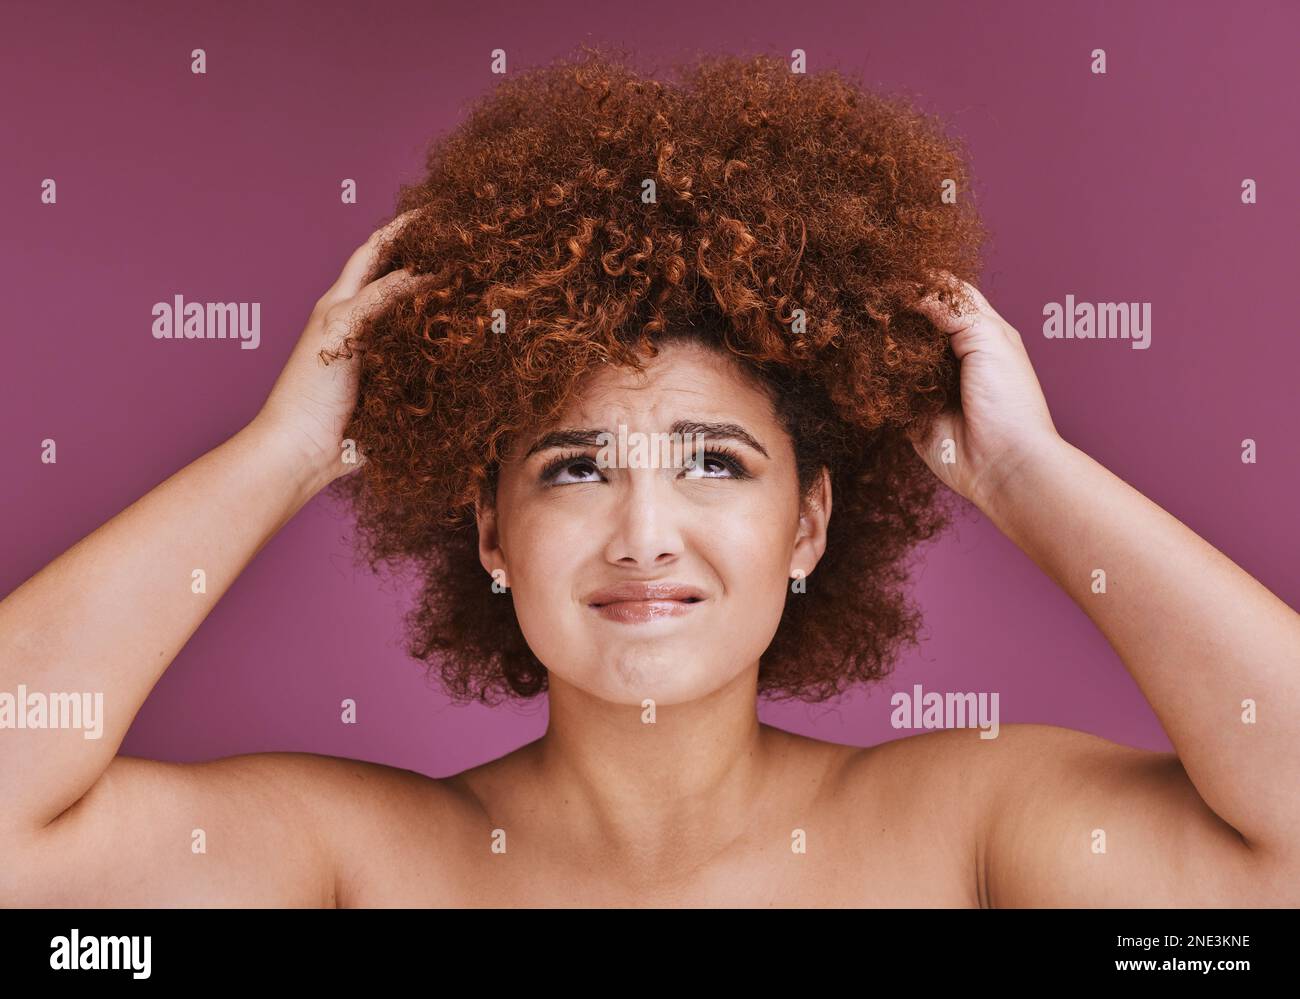 Modélisez le stress, la perte de cheveux ou afro sur le fond du studio de beauté en toilettage, l'anxiété de texture ou l'échec. Femme, main ou coiffure naturelle avec des dommages, fendu Banque D'Images